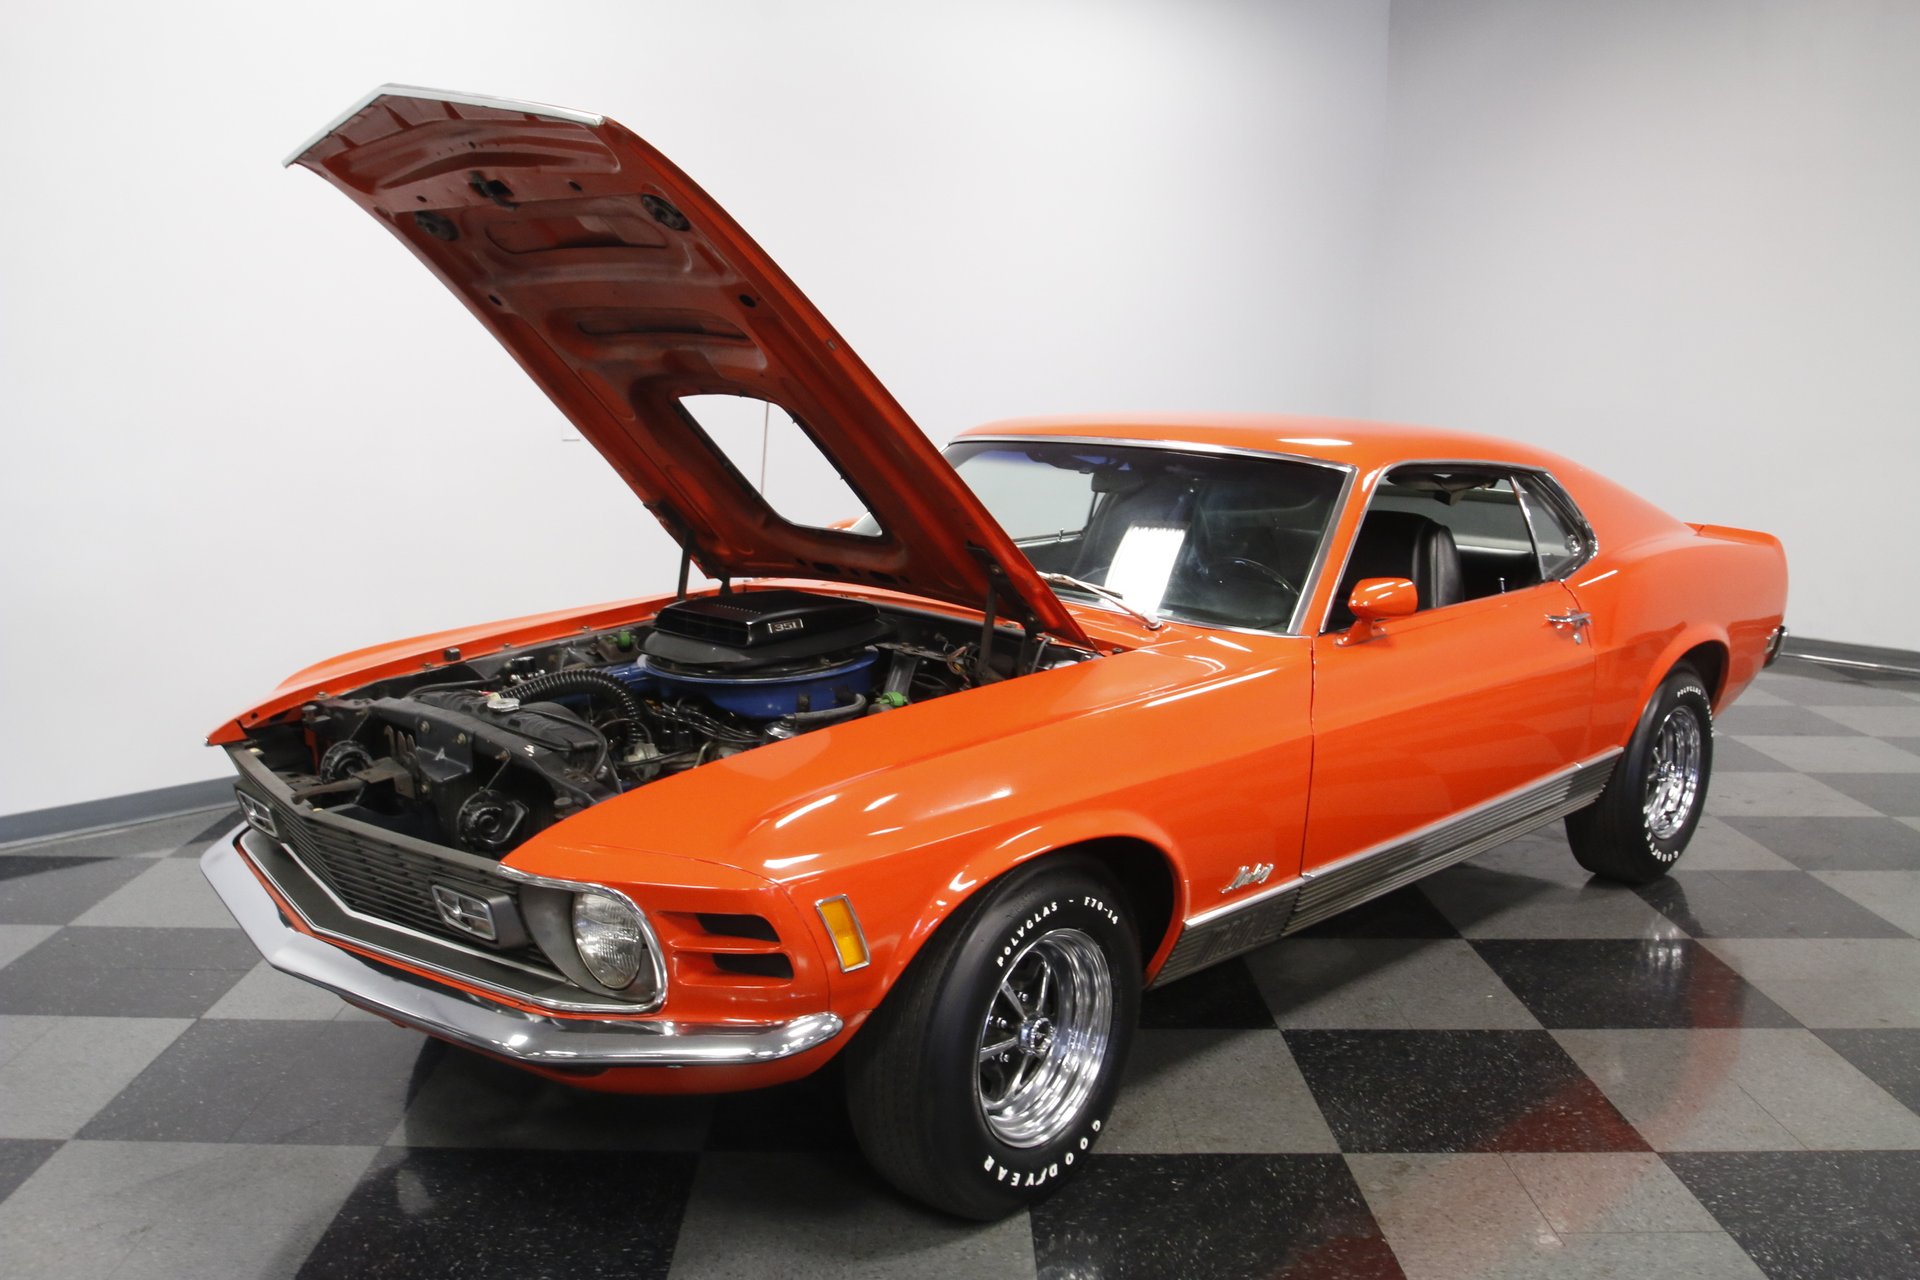 1970 Mustang Ford Built 1 GT 24 Race 12 Sport 40 Car 25 Carousel Orange 18 Model